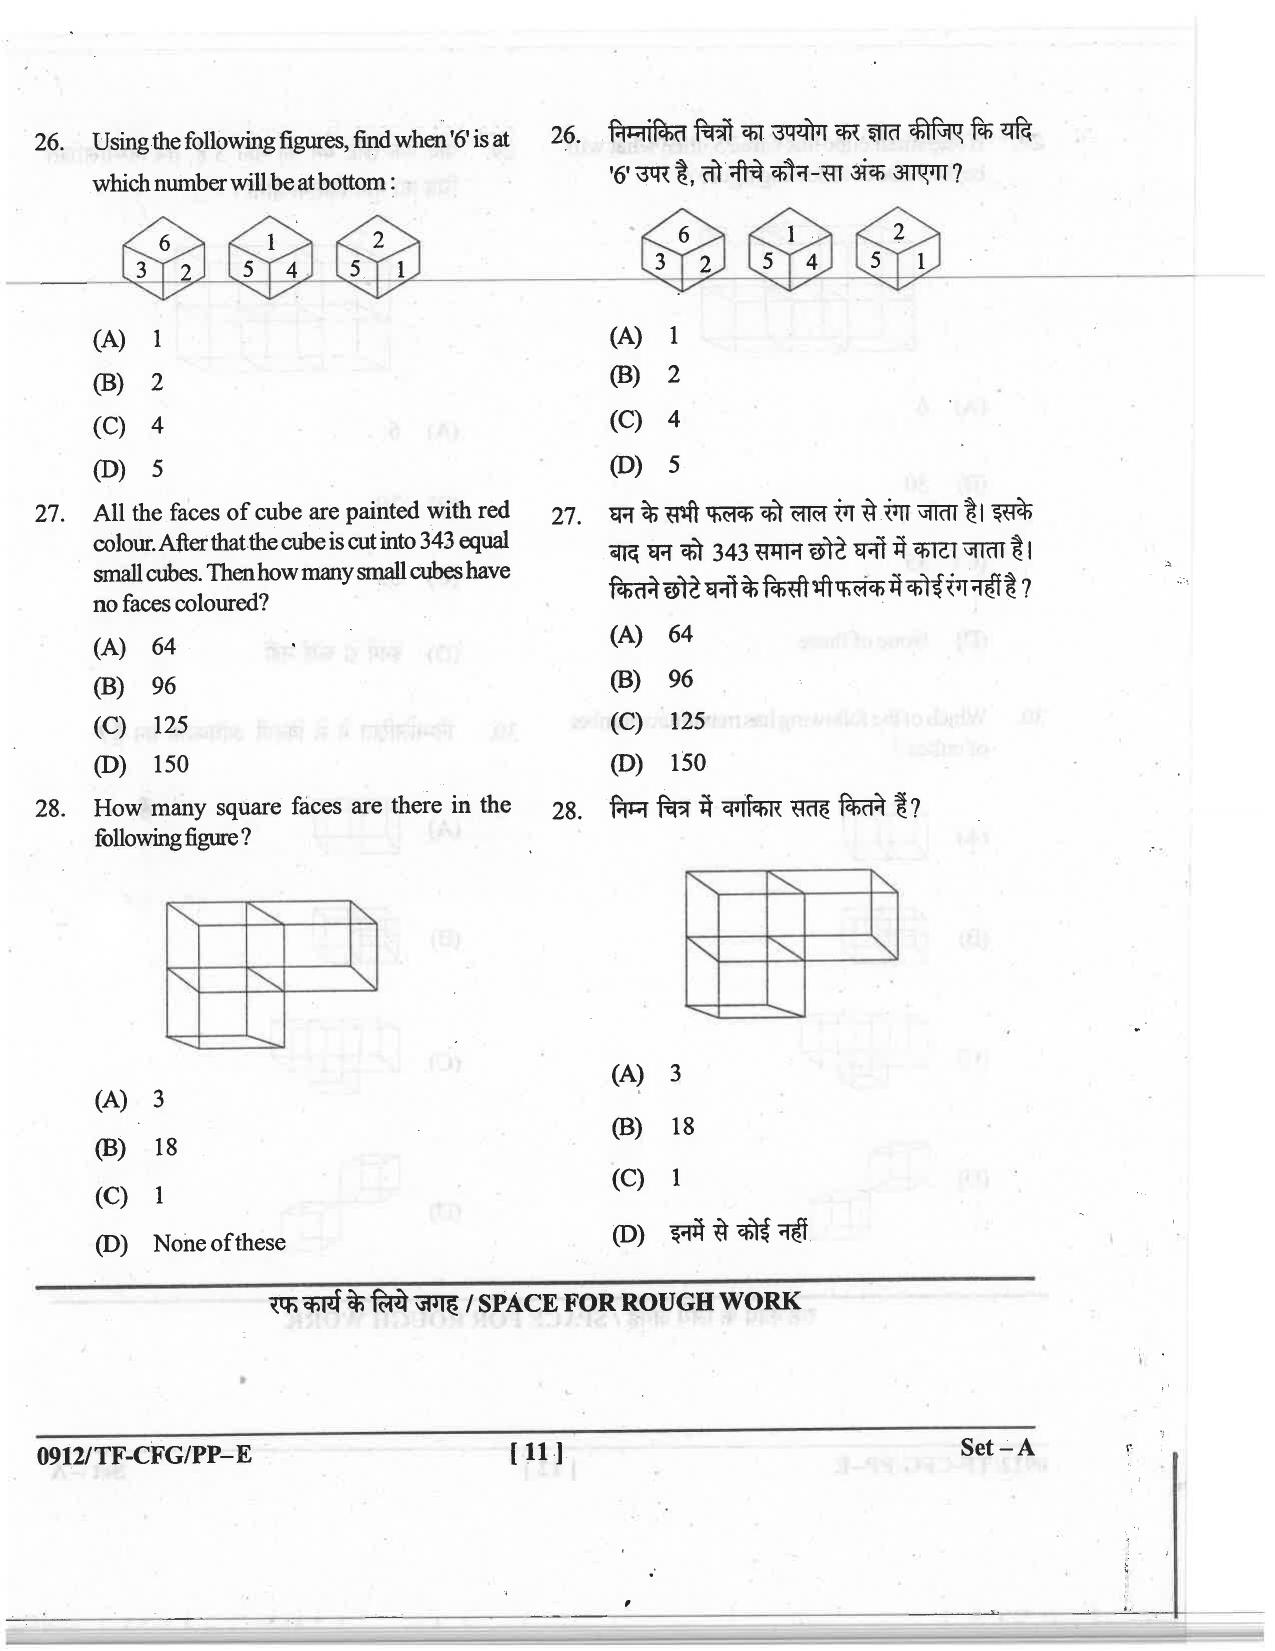 CG Pre B.A B.Ed / Pre B.Sc. B.Ed 2019 Question Paper - Page 11